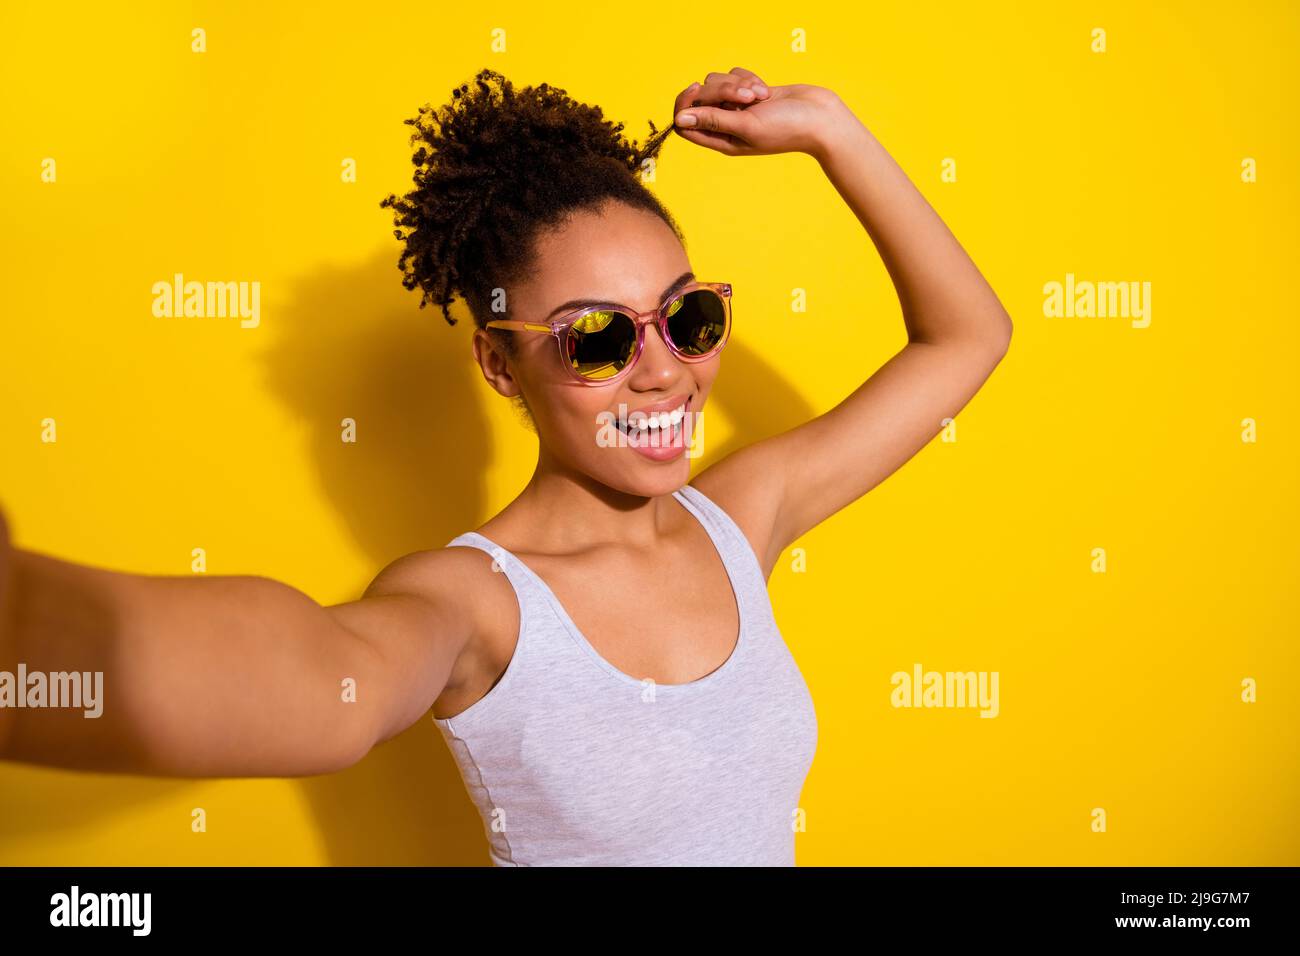 Portrait de gai belle fille bras toucher cheveux curl prendre selfie isolé sur fond jaune couleur Banque D'Images